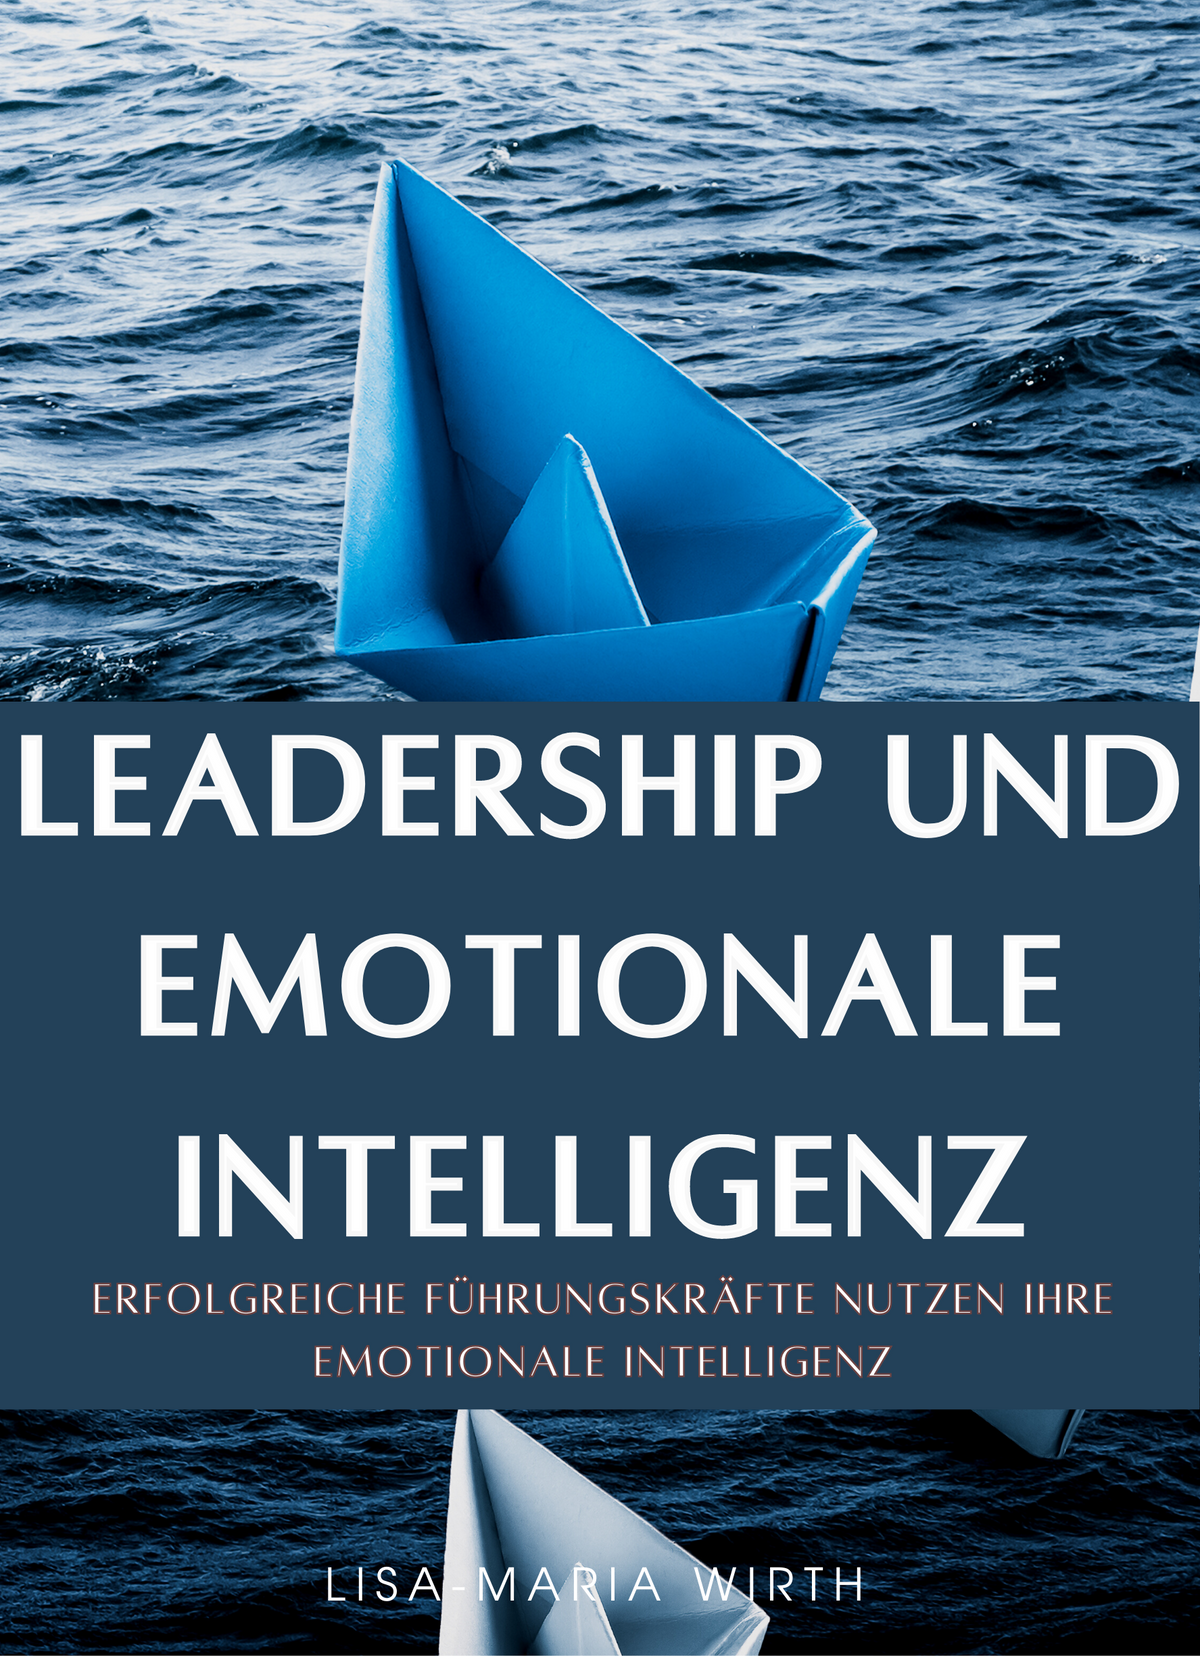 Leadership und emotionale Intelligenz